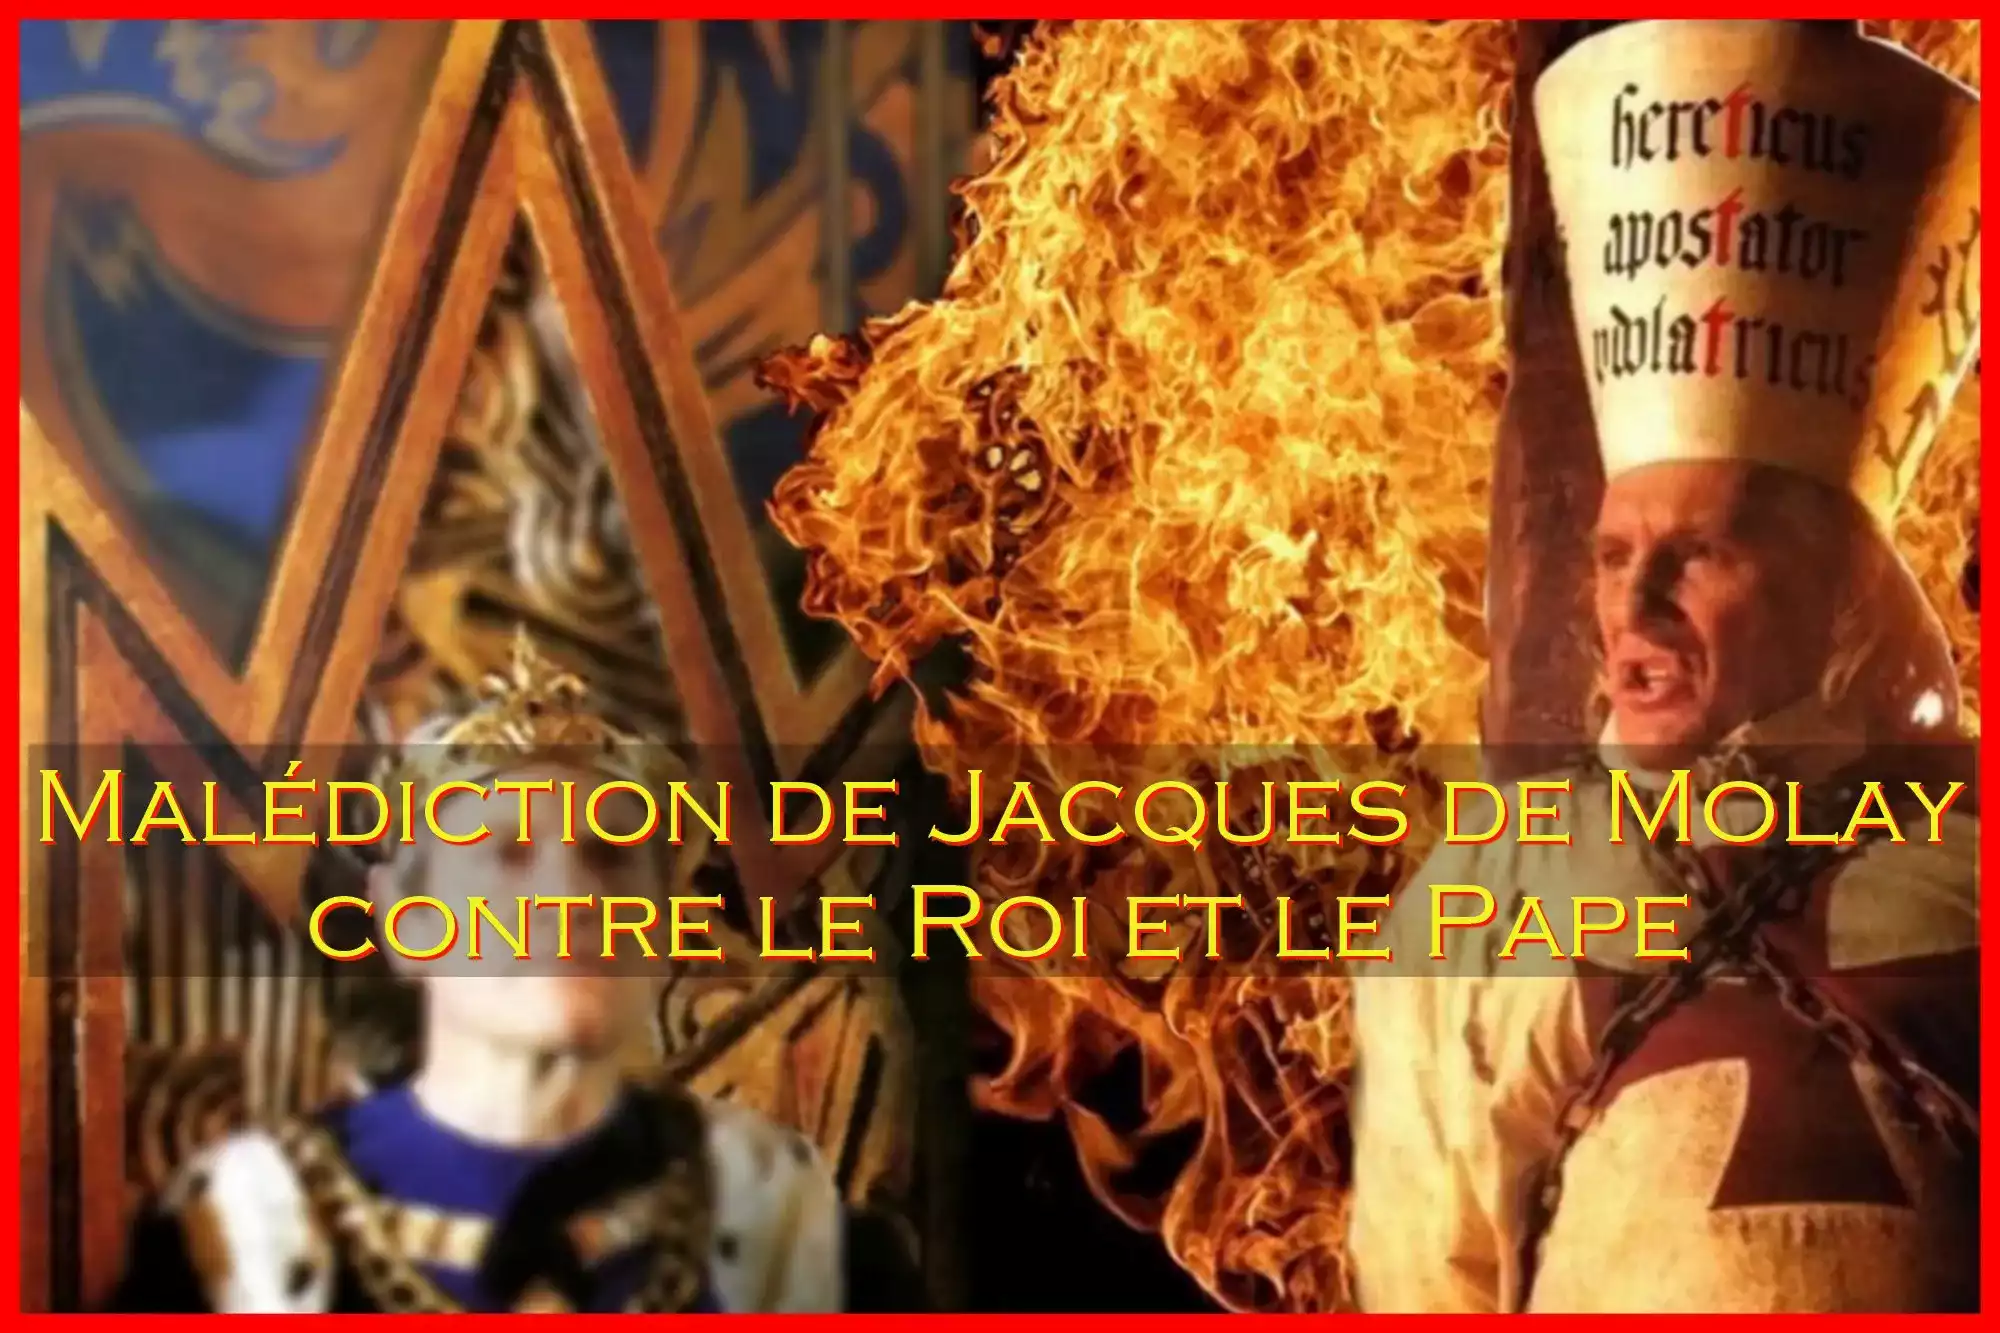 Malédiction lancée par Jacques de Molay contre le Roi et le Pape